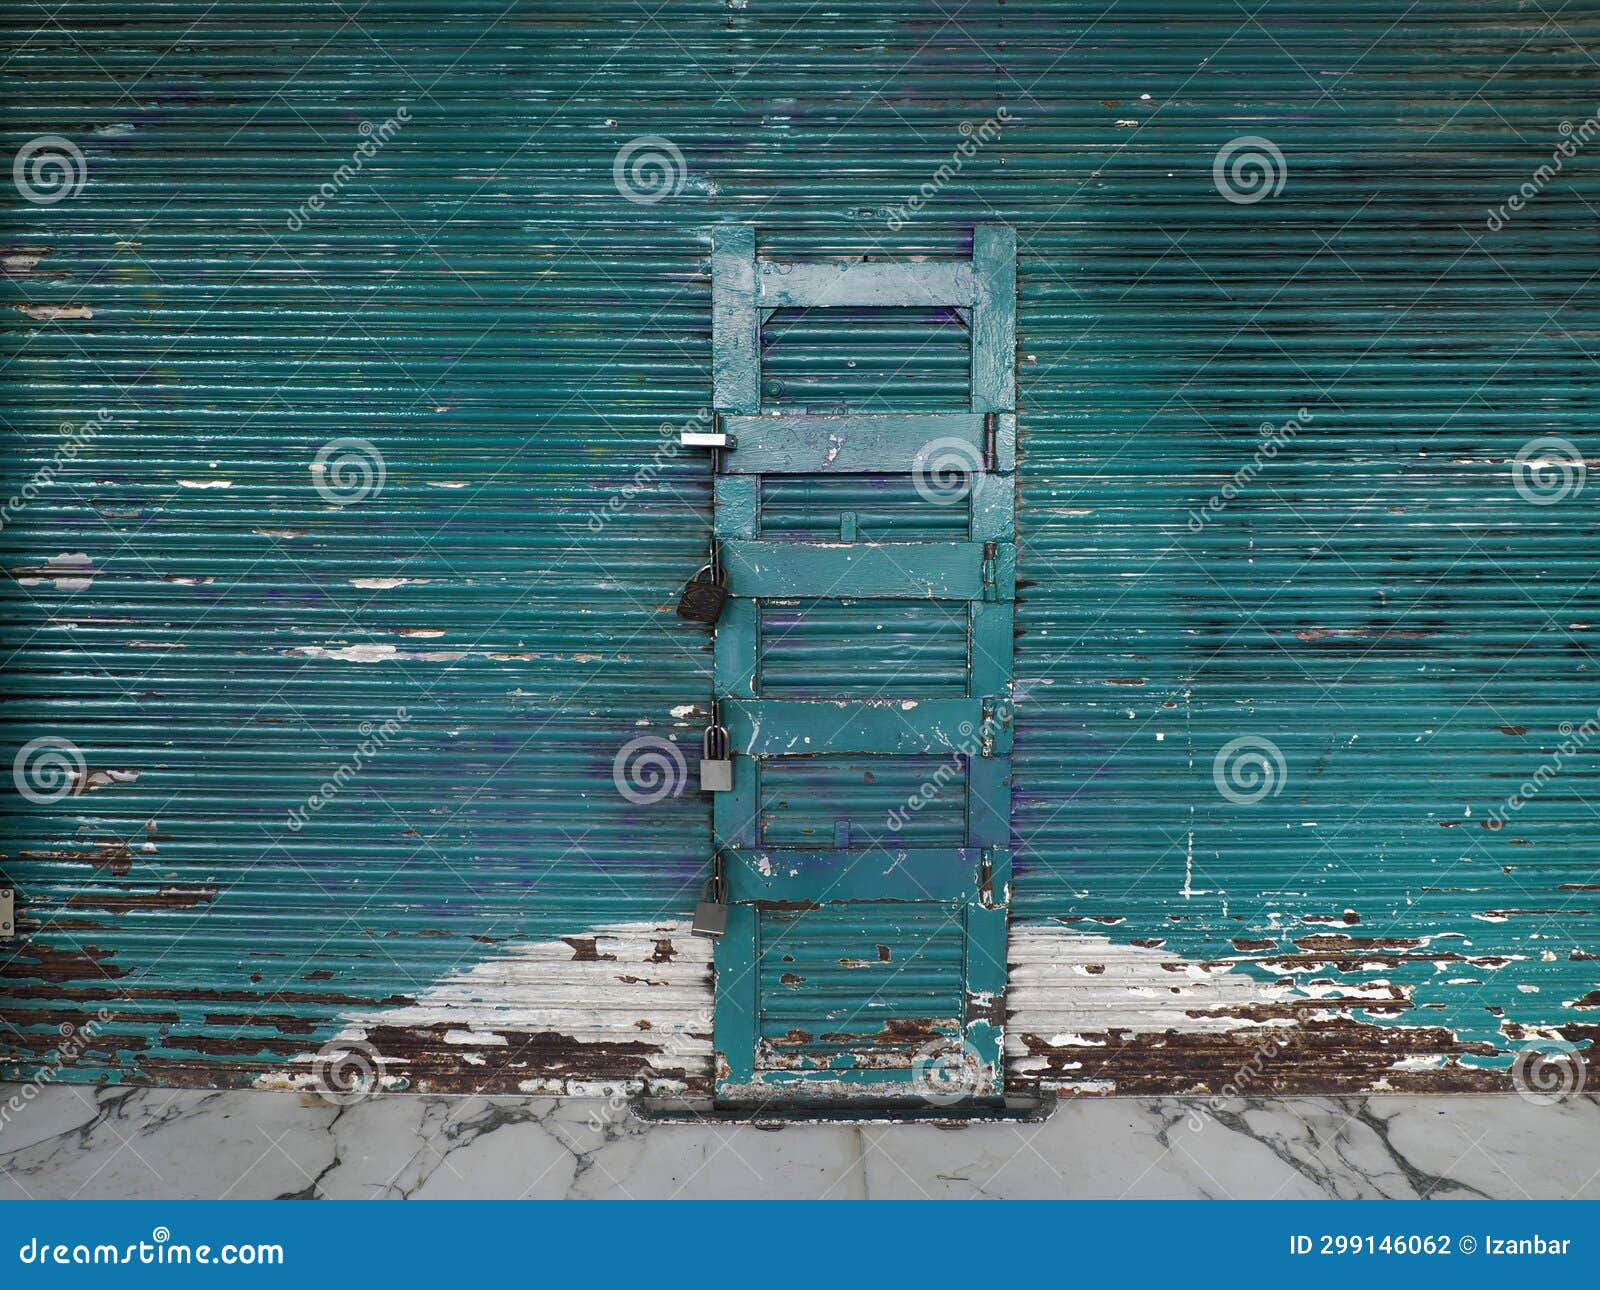 old shop door in zocalo ciudad de mexico, mexico city